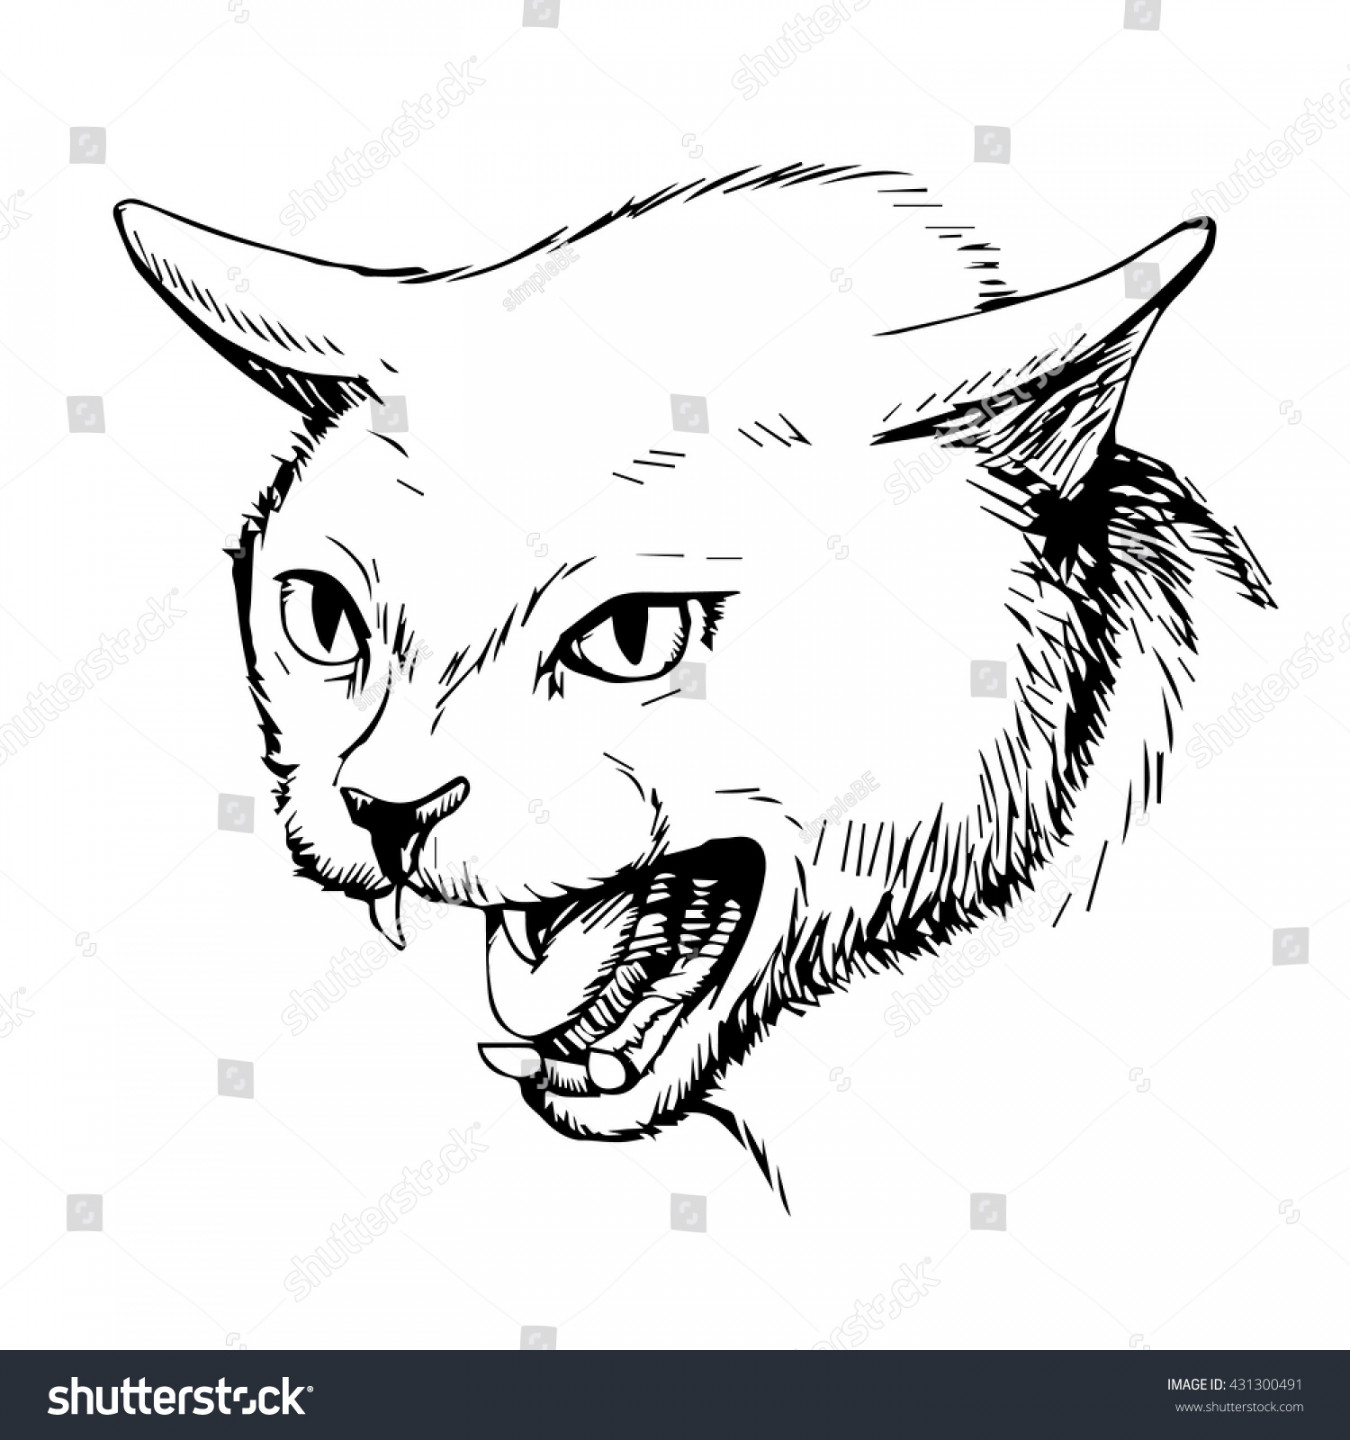 Freehand Sketch Illustration Angry Cat Kitten: Stock-Vektorgrafik